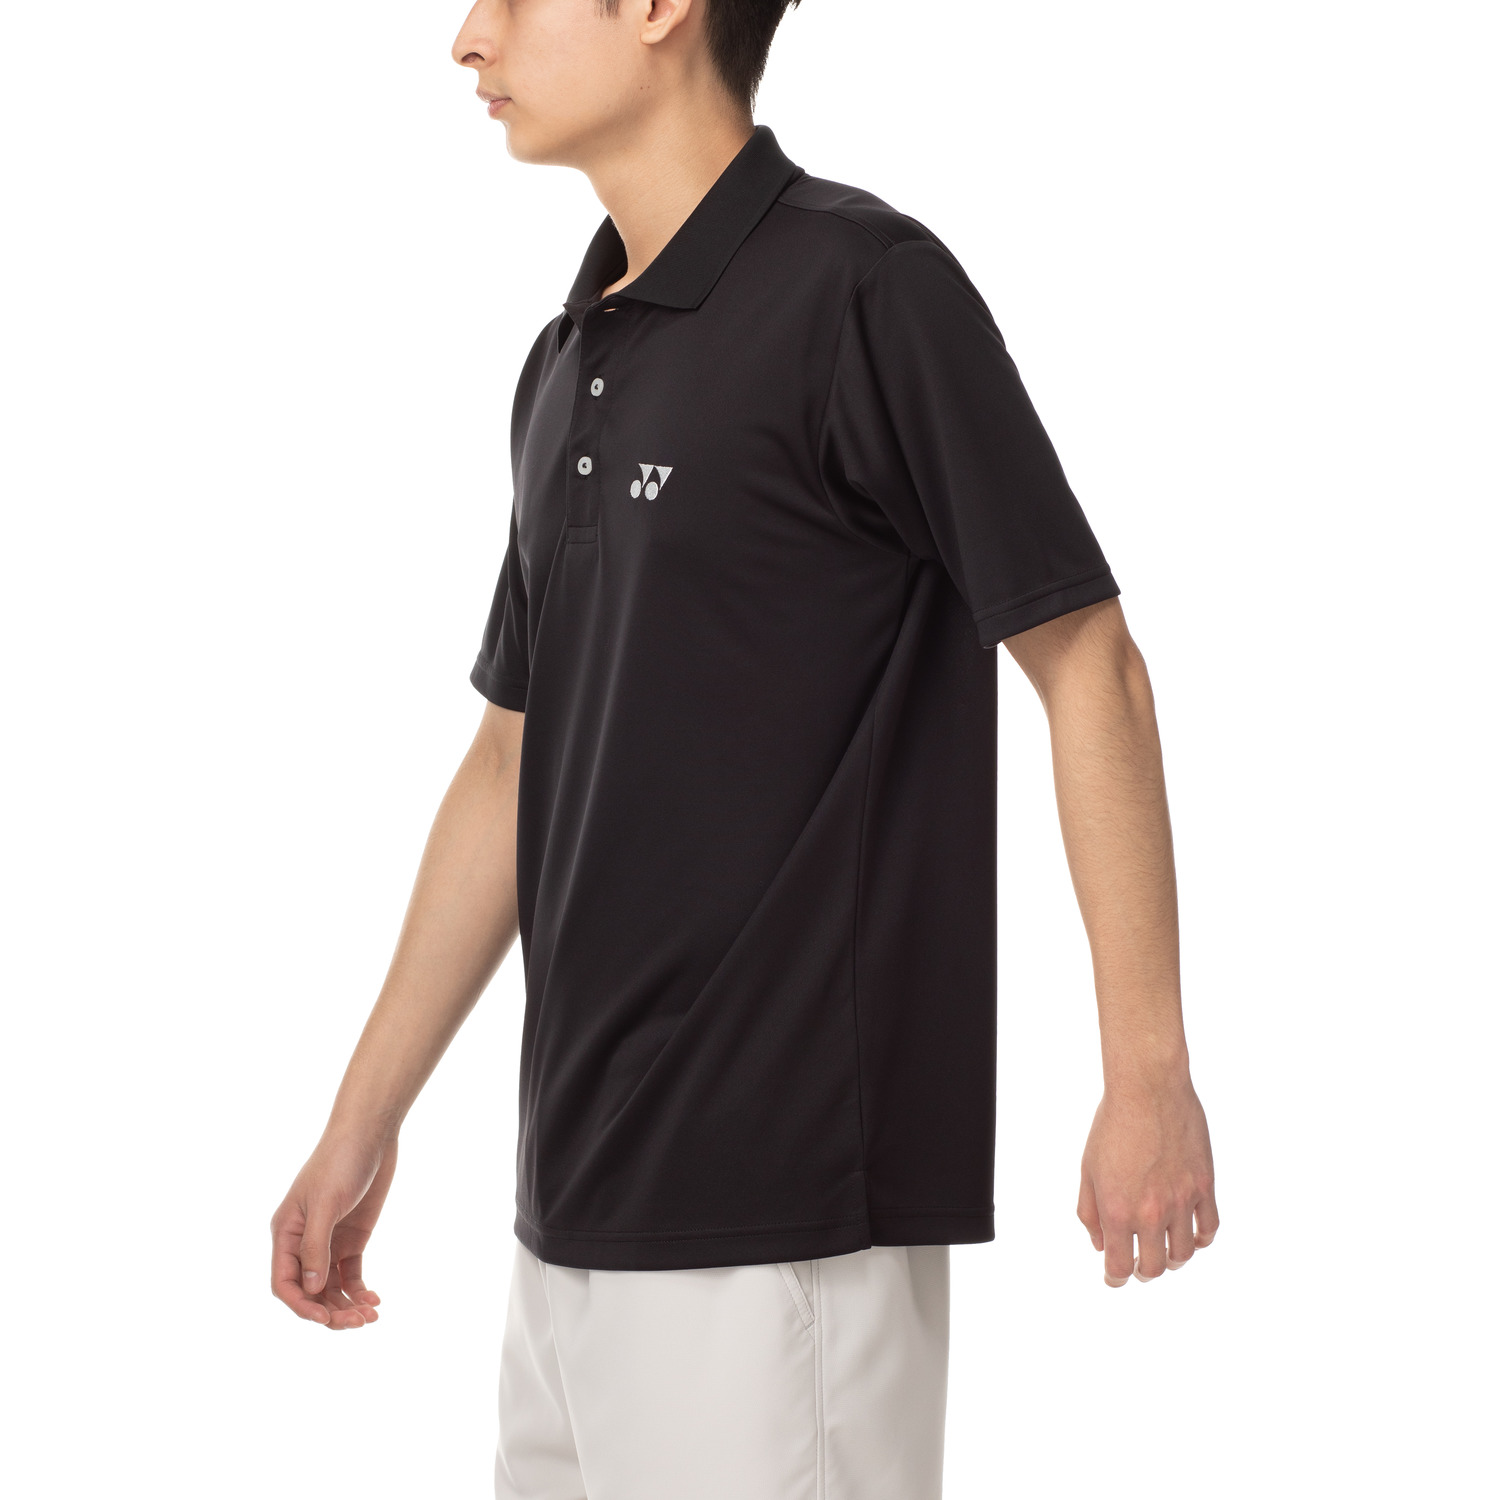 1119円 人気の ヨネックス ポロシャツ メンズ 半袖 シャツ トレーニングウェア 10300 9カラー 吸汗速乾 男女兼用 部活 試合 練習 YONEX ゆうパケット対応